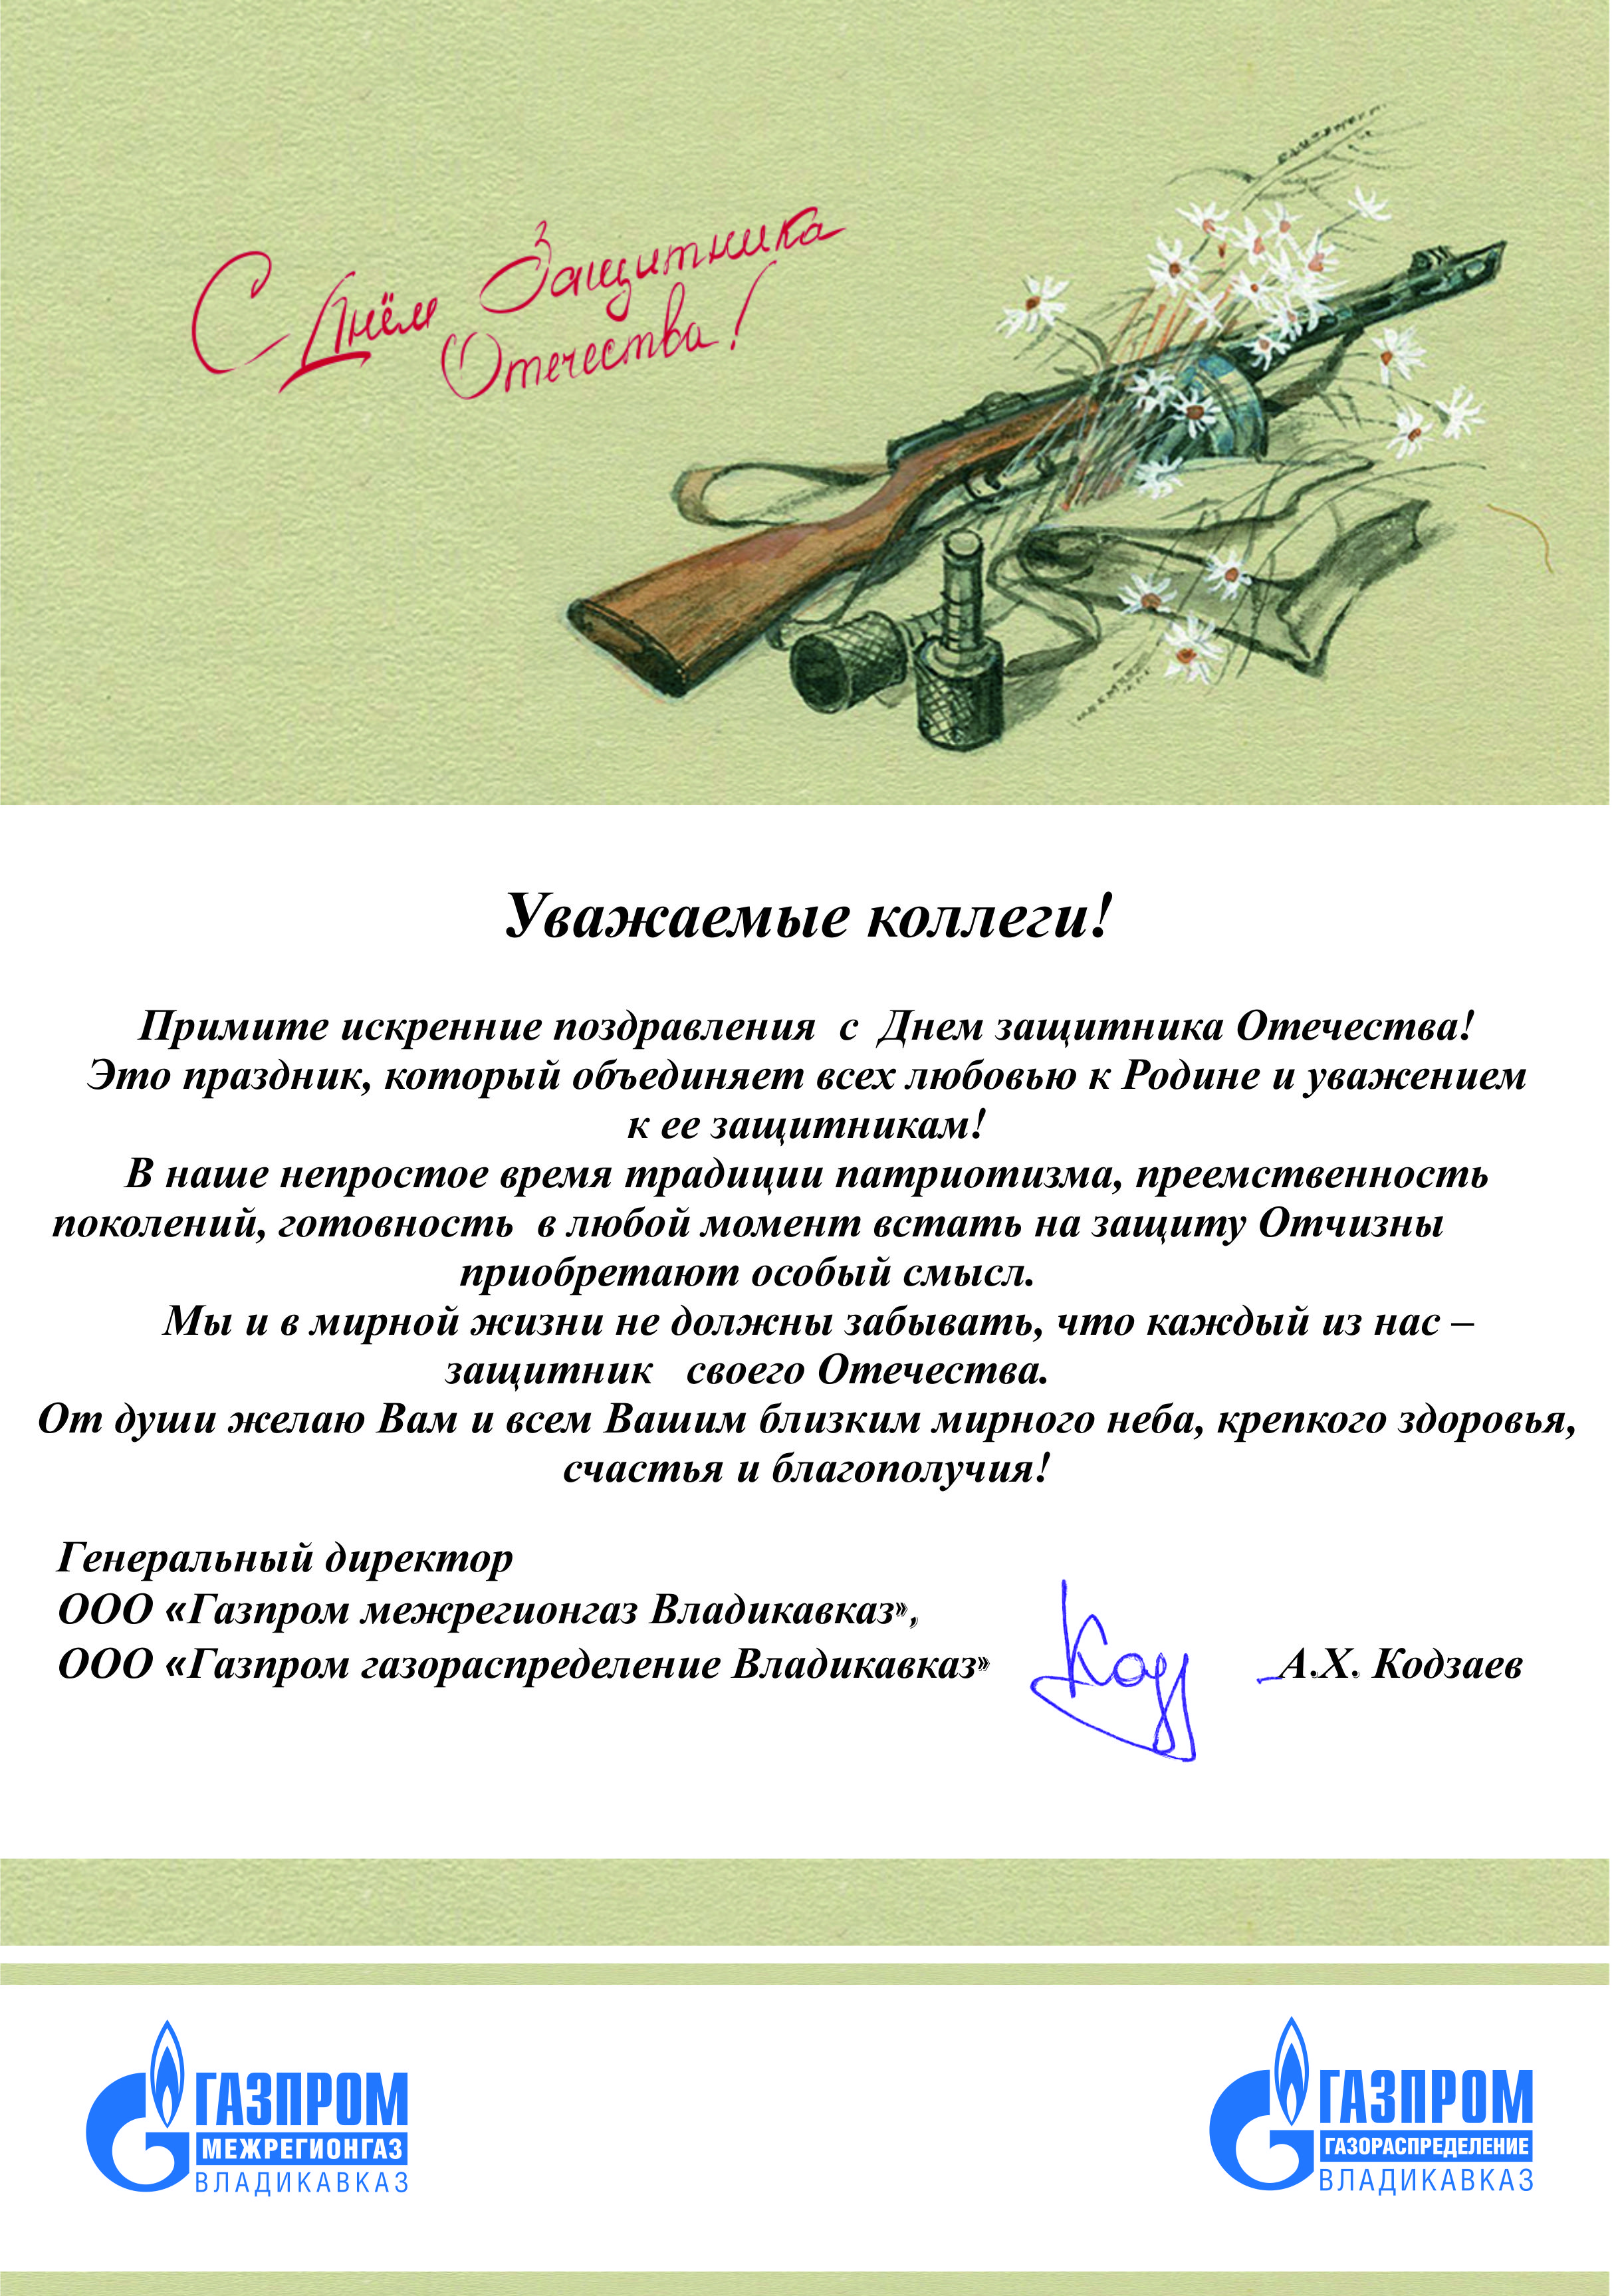 Кодзаев руководитель межрегионгаз г.Владикавказ. Поздравление коллектива с 23 февраля от руководителя